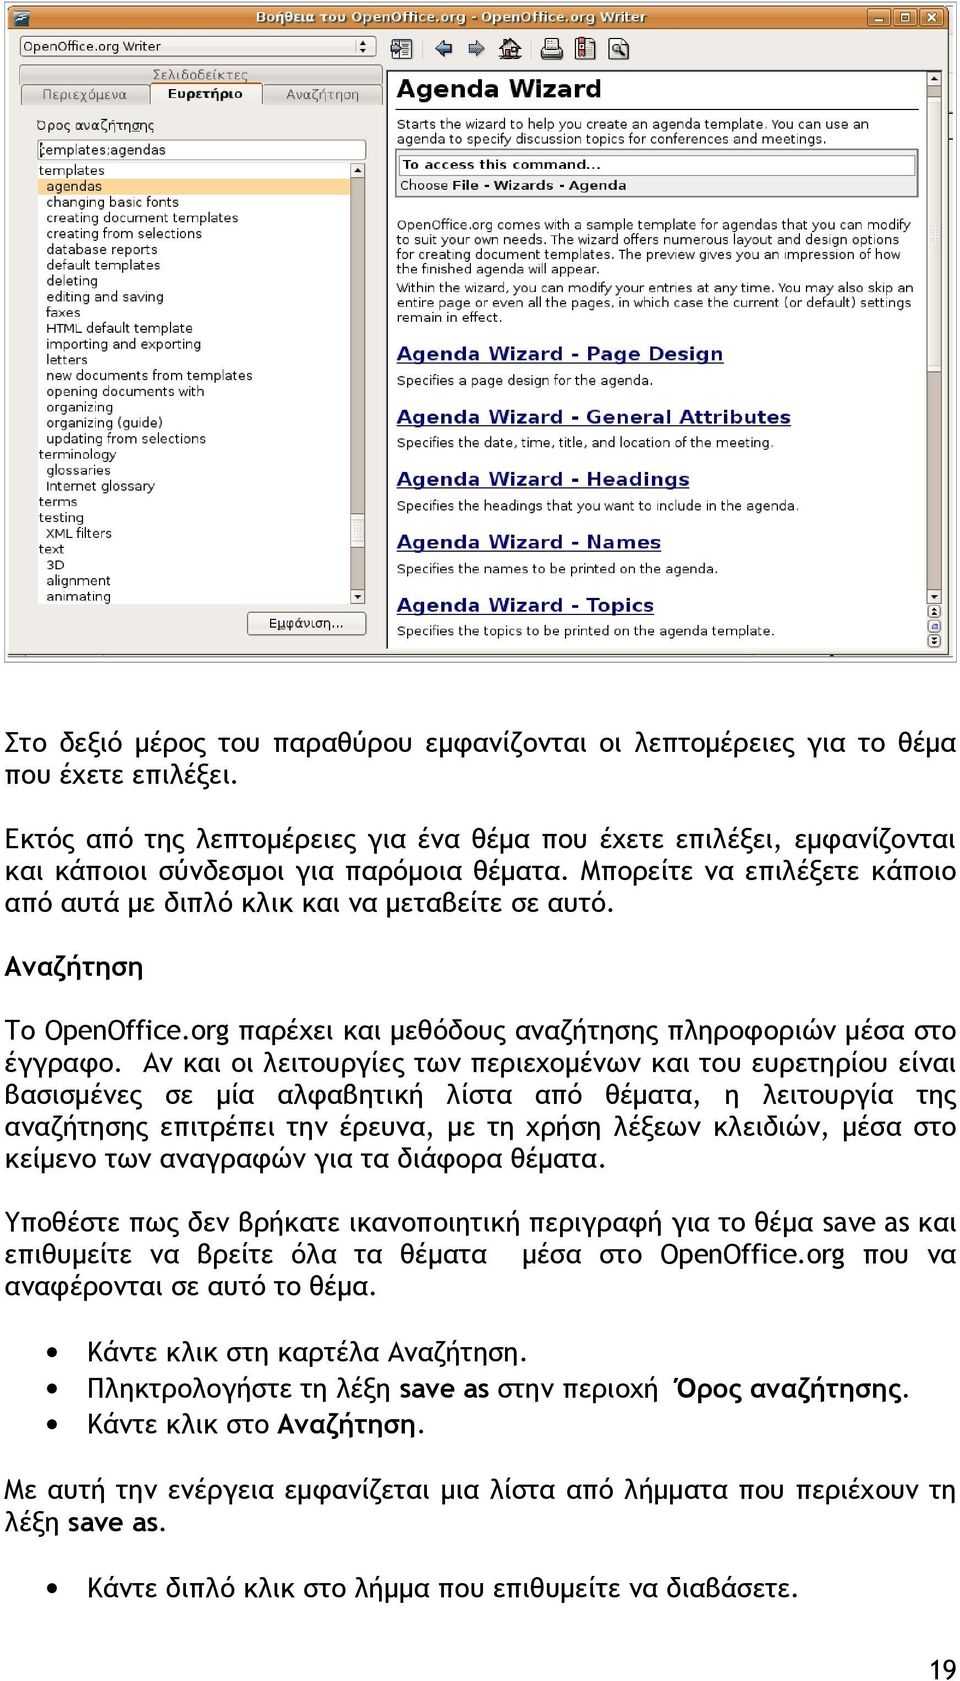 Αναζήτηση Το OpenOffice.org παρέχει και μεθόδους αναζήτησης πληροφοριών μέσα στο έγγραφο.